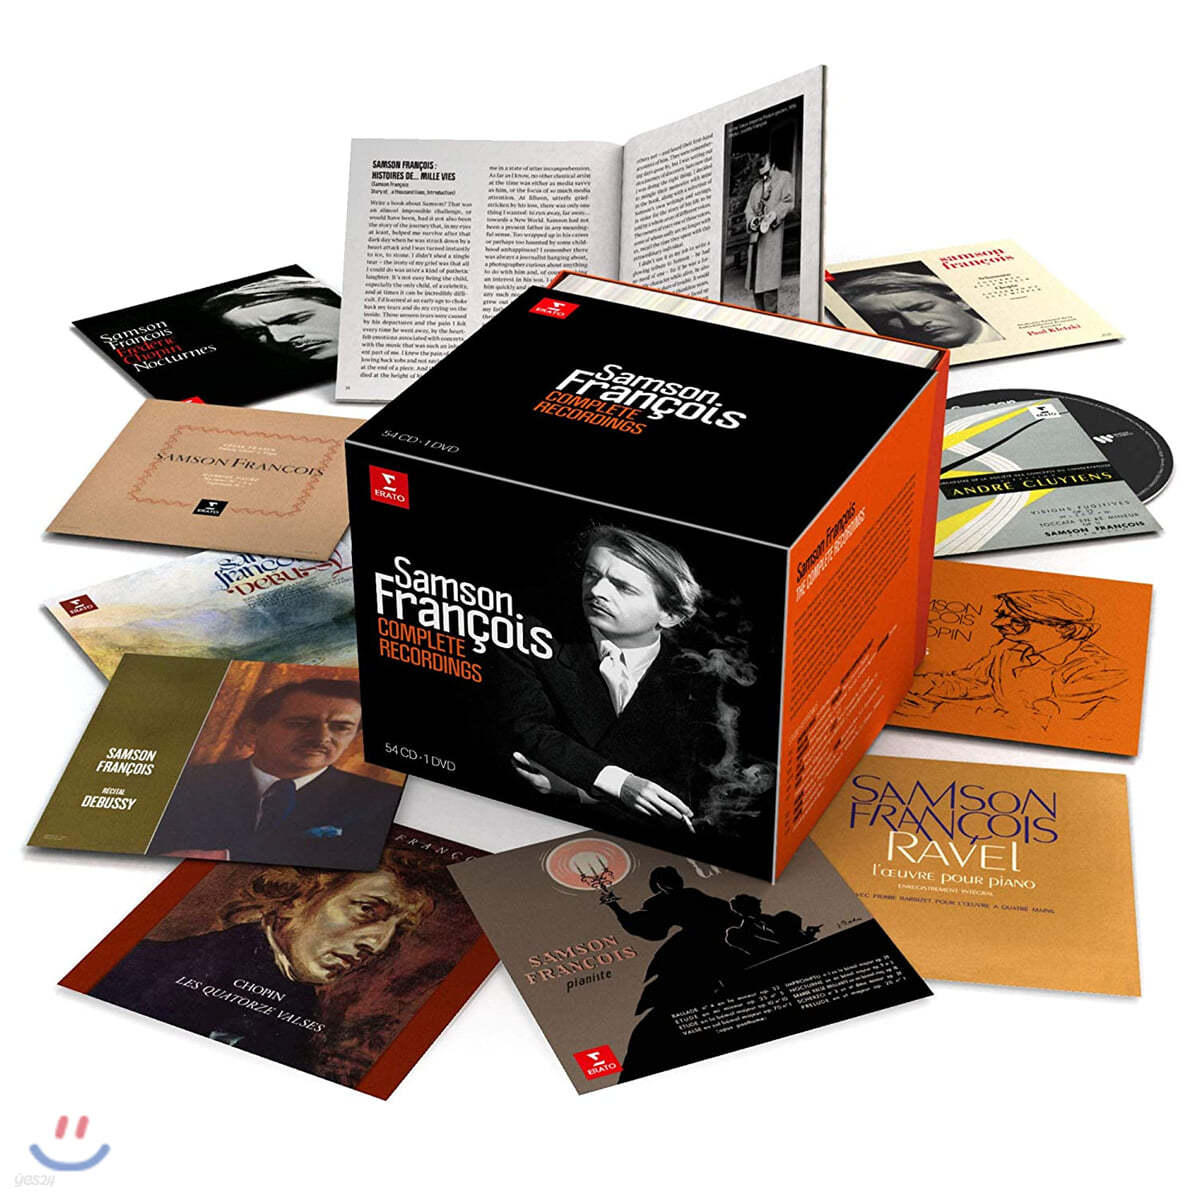 상송 프랑스와 녹음 전집 (Samson Francois - Complete Recordings) 